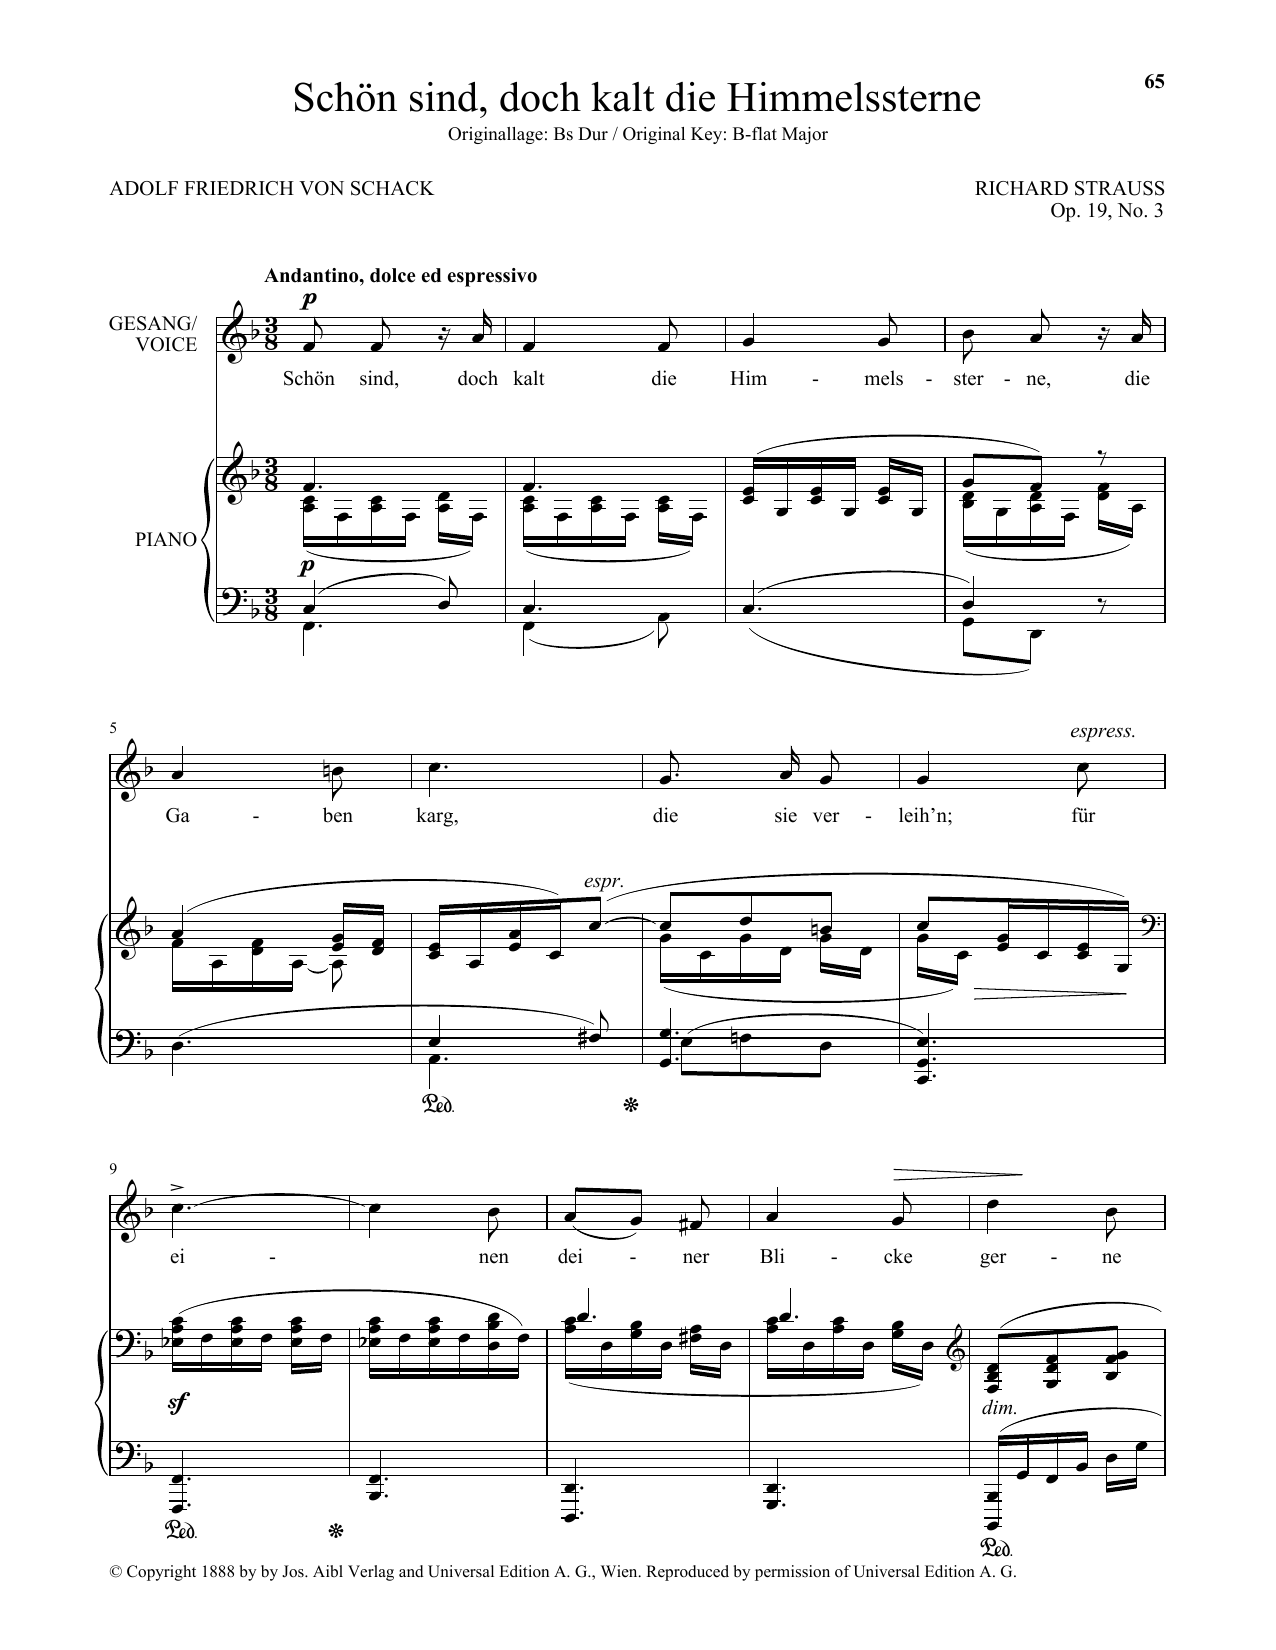 Download Richard Strauss Schon Sind, Doch Kalt Die Himmelssterne Sheet Music